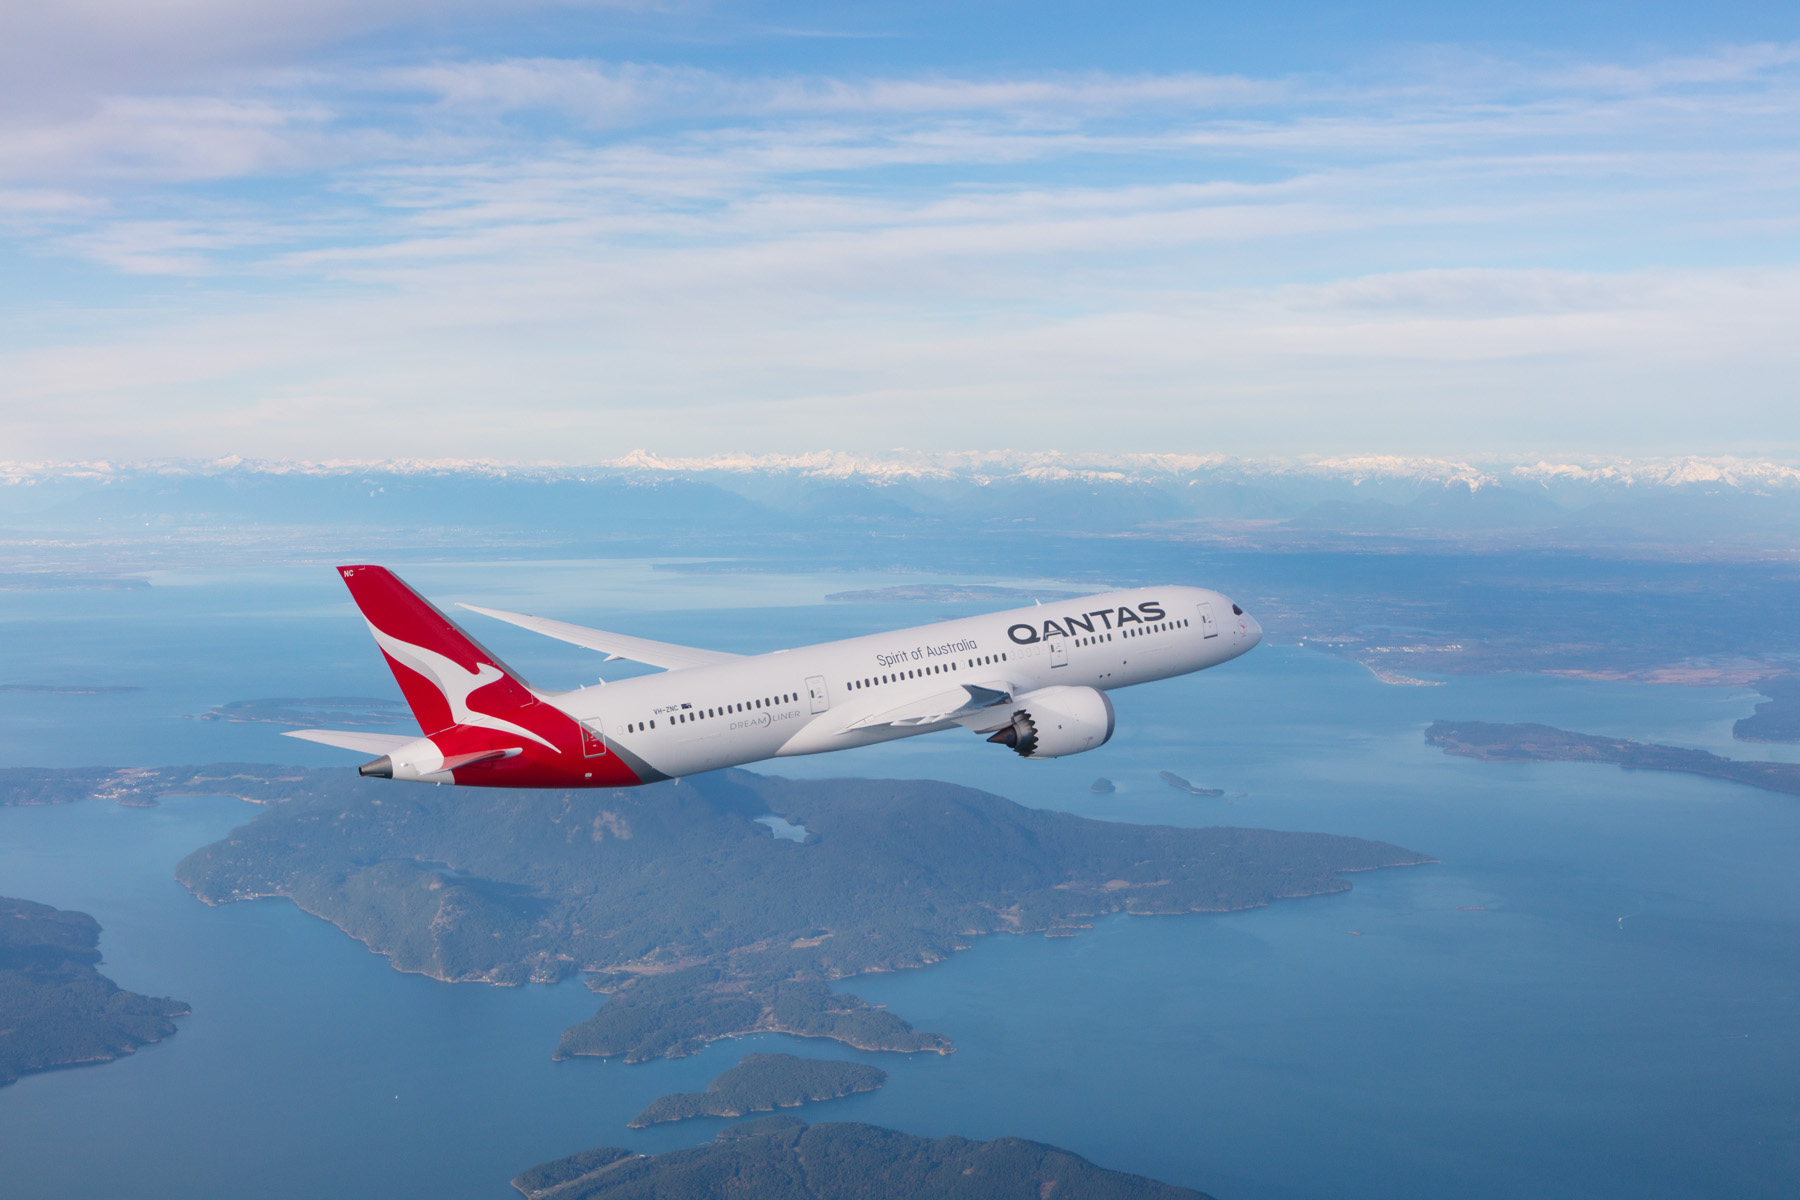 La aerolínea Qantas realizará el vuelo más largo del mundo esta semana